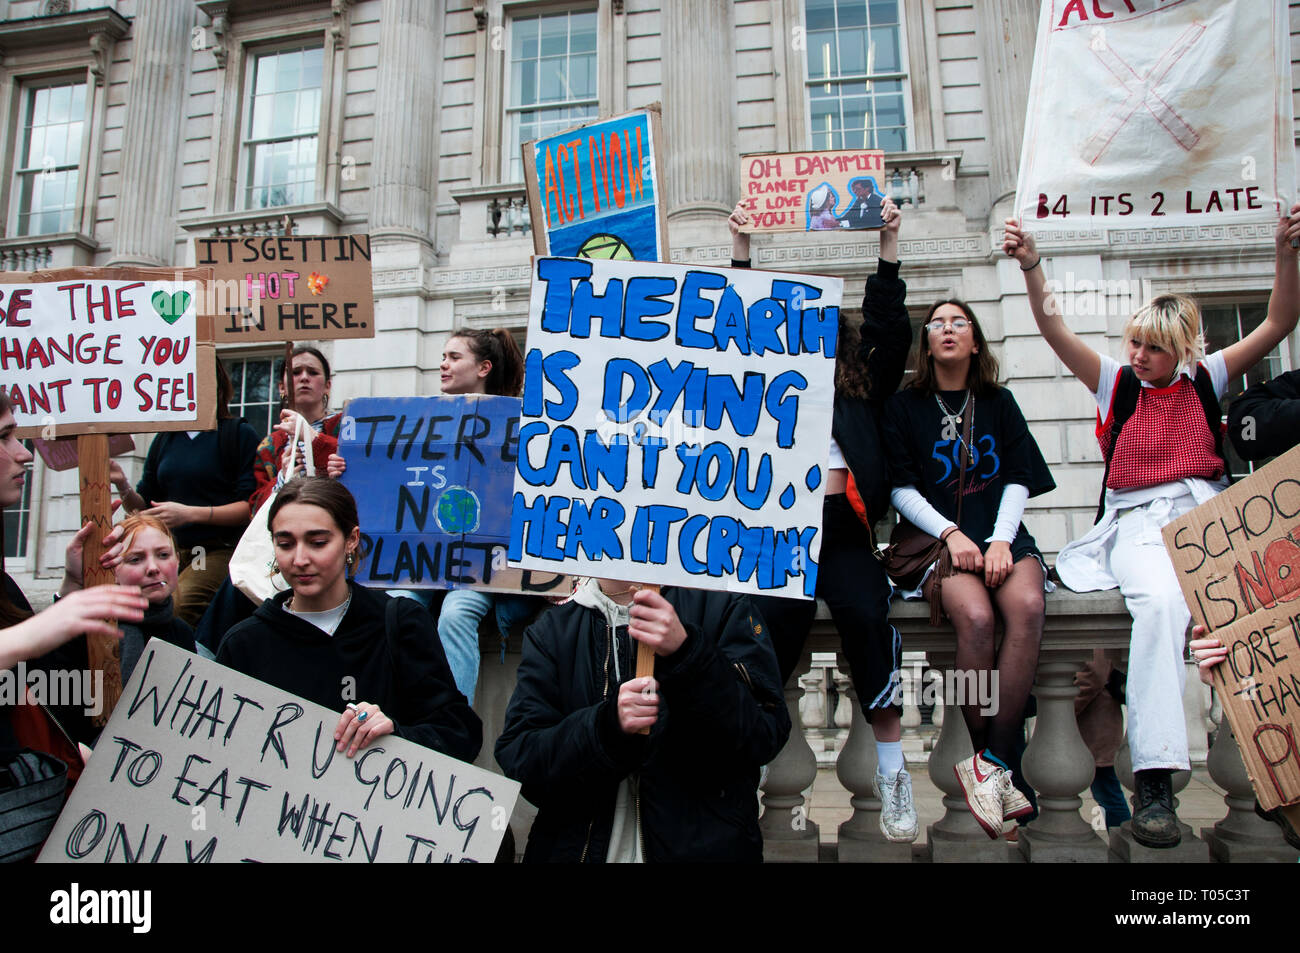 London. Schüler Streik für Klimawandel, Teil einer globalen Aktion. Studenten mit Plakaten einschließlich eines sagen: "Die Erde stirbt, kann nicht Yo Stockfoto